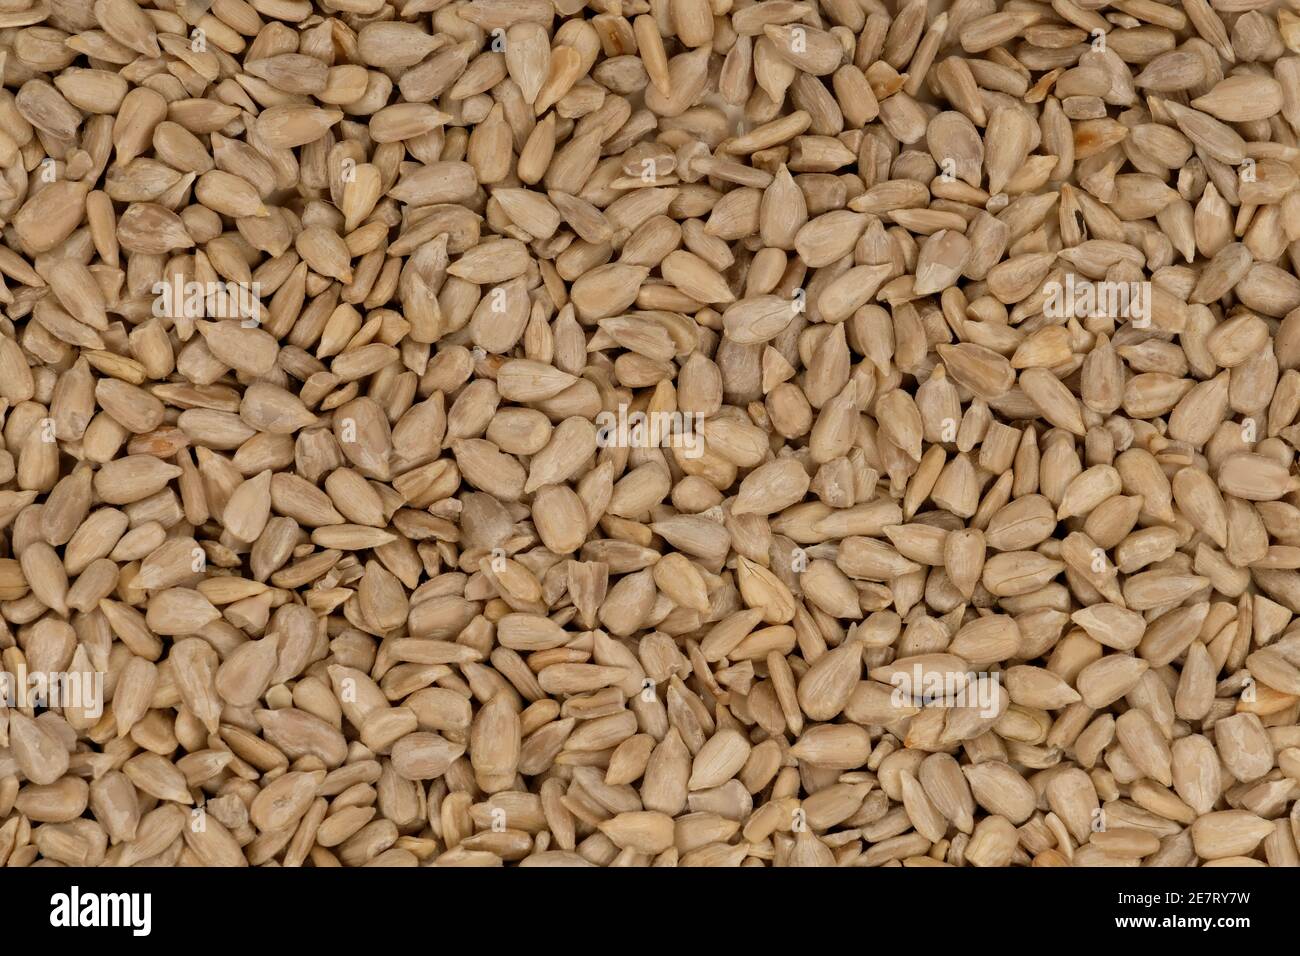 Los granos de semillas de girasol Foto de stock